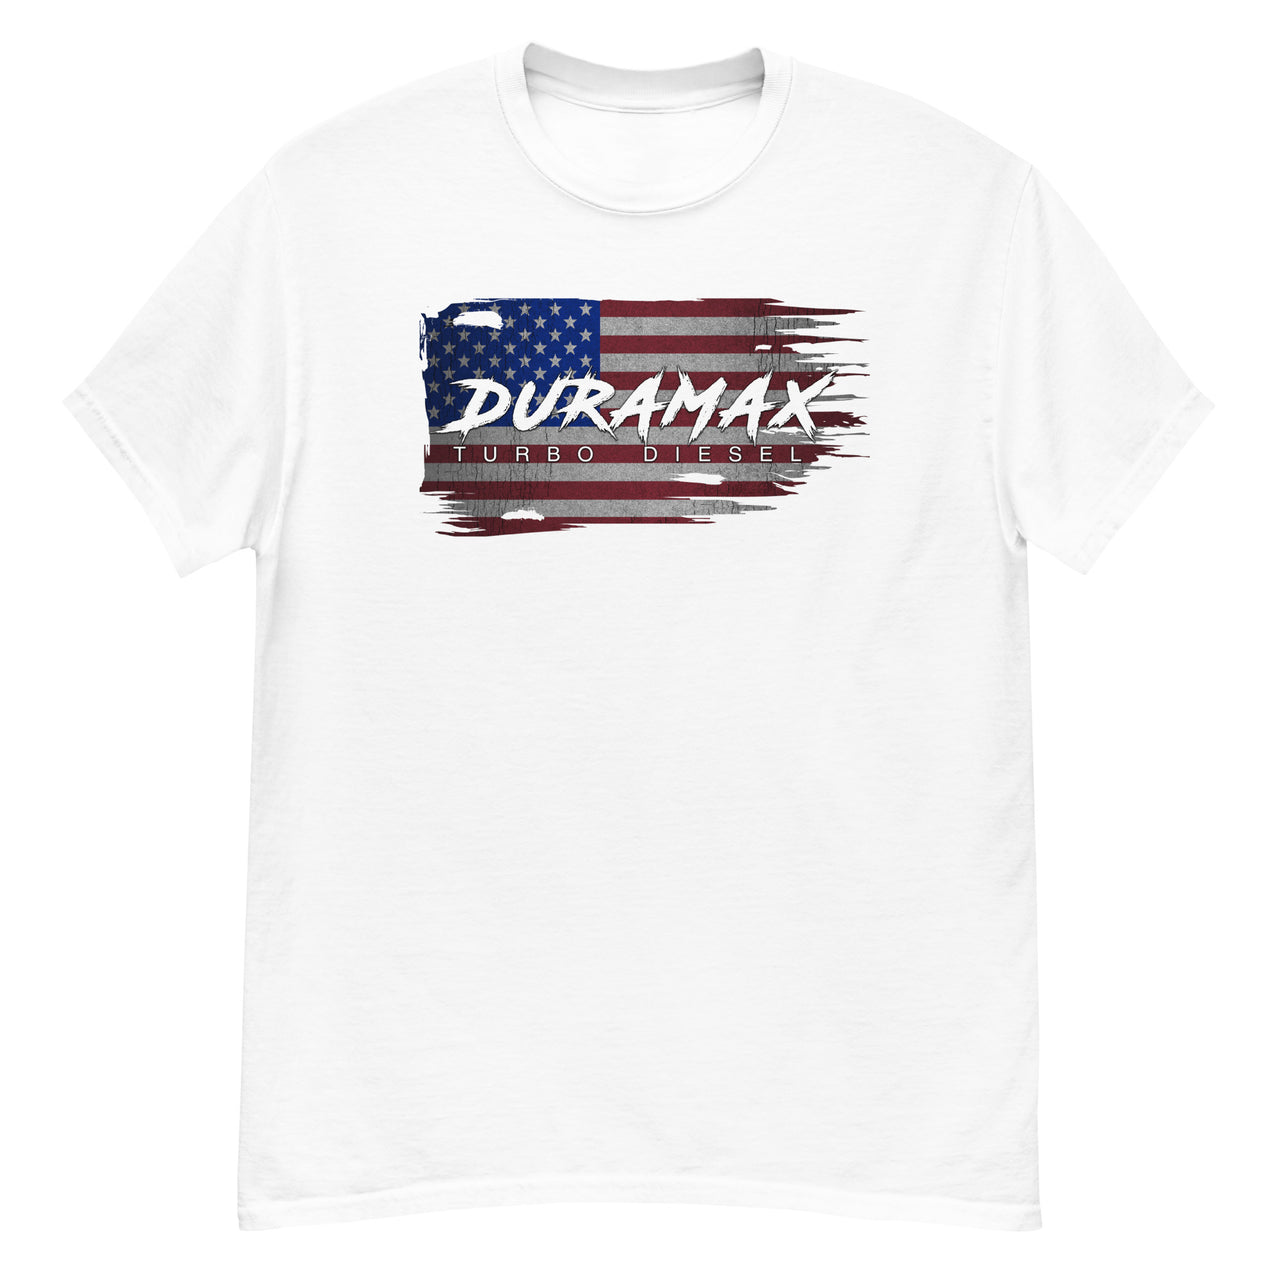 Duramax Diesel T-Shirt American Flag Shirt in white